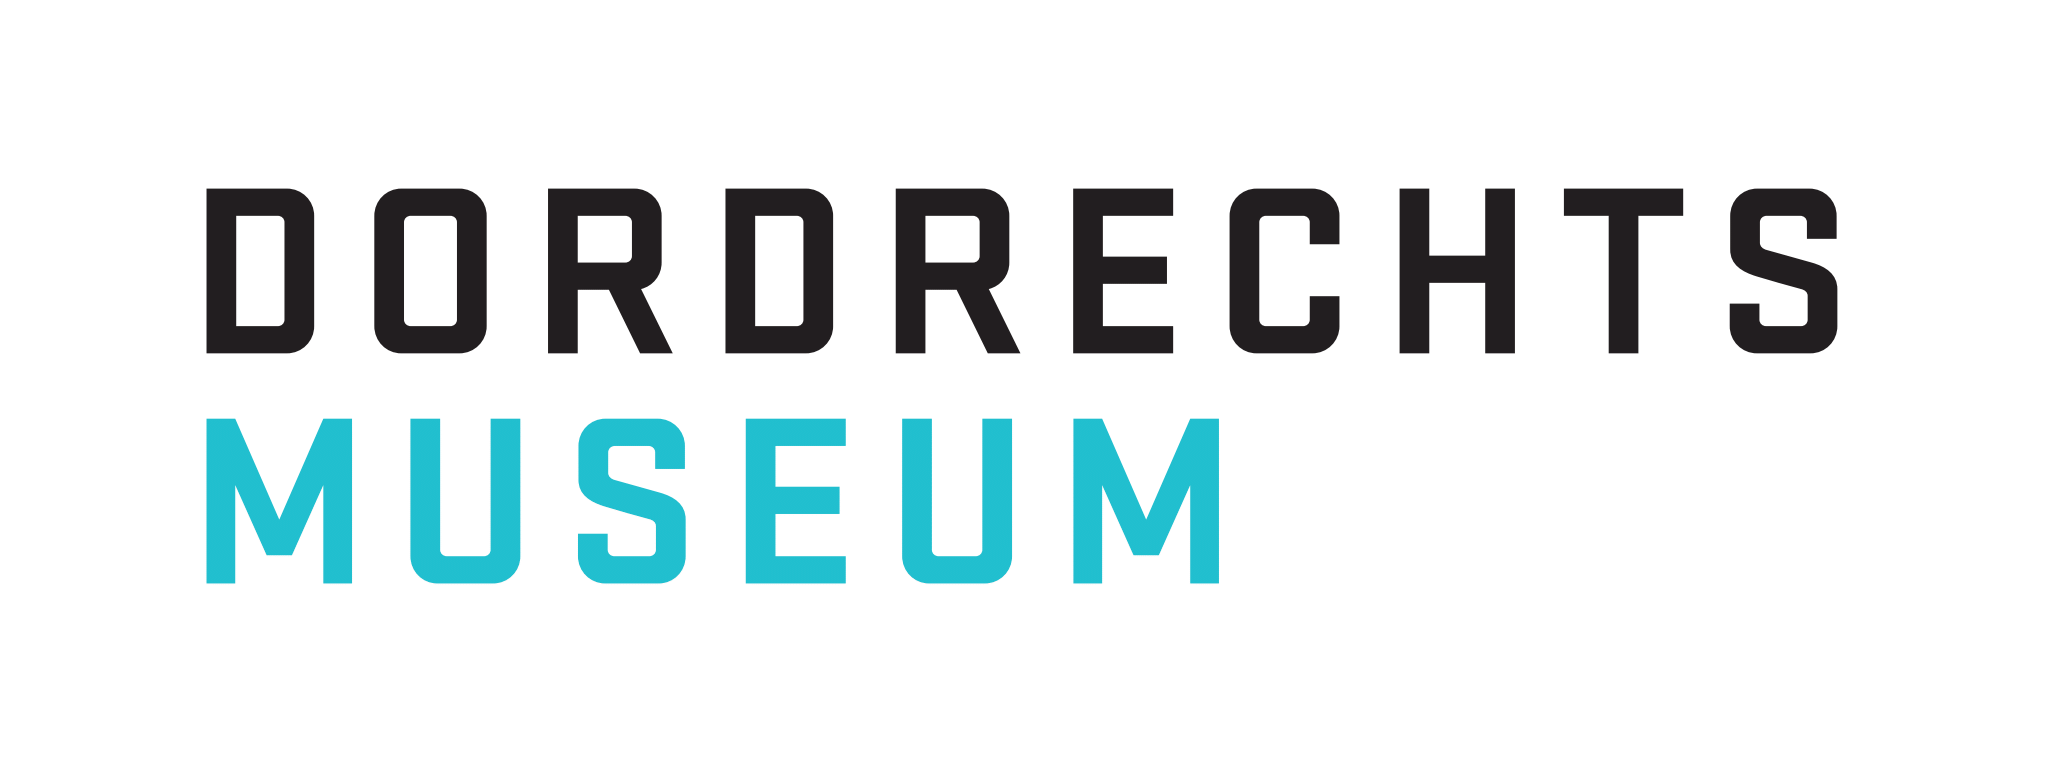 Dordrechts Museum logo